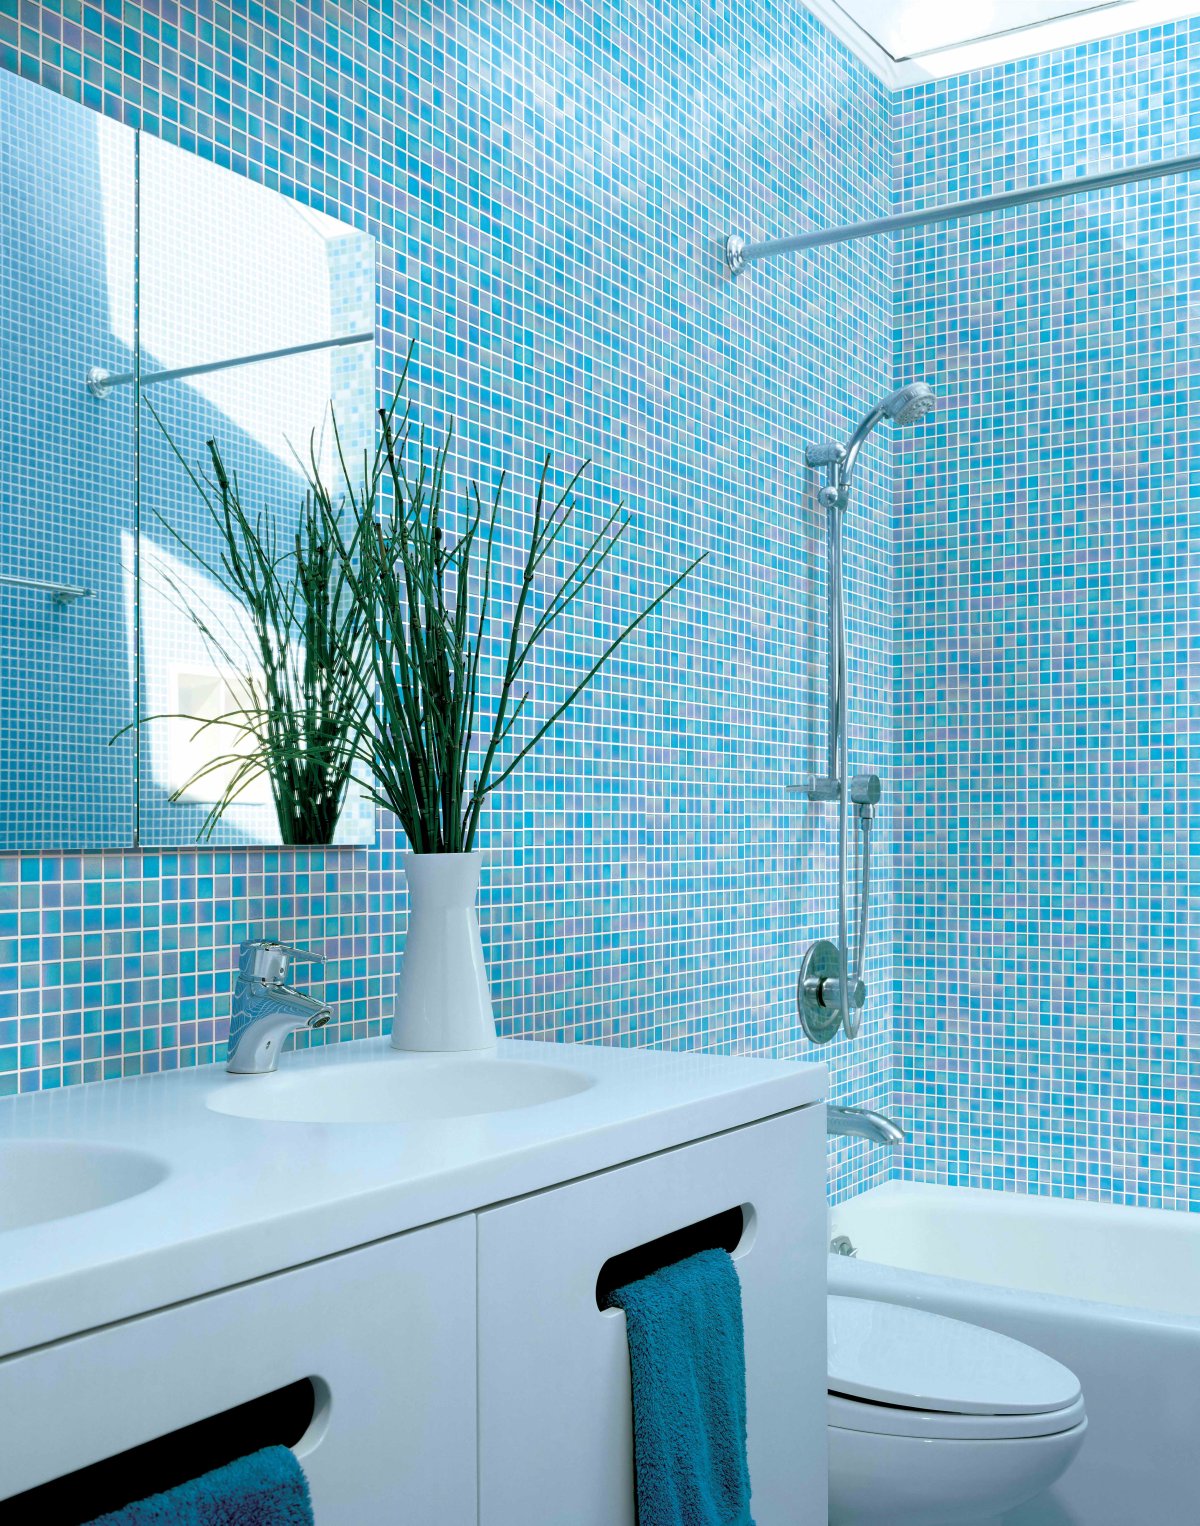 Сочетание плитки и мозаики в ванной